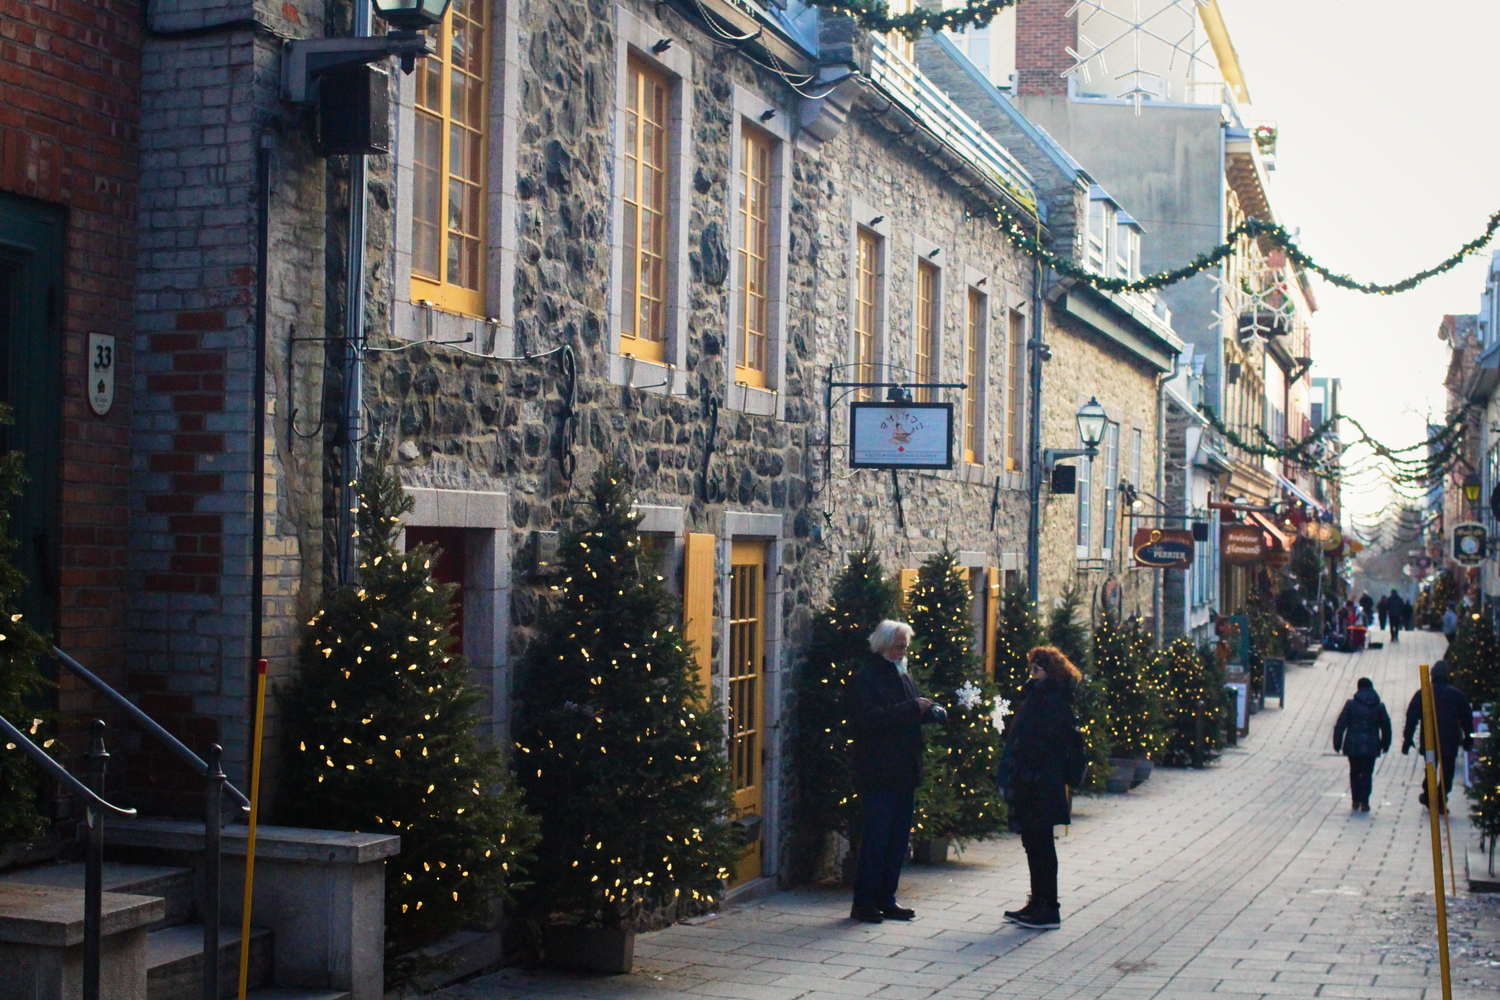 La rue du Petit-Champlain comporte les premières maisons construites par les Français à Québec. C’est aussi une des plus anciennes rues d’Amérique du Nord. Elle ressemble vraiment à une ruelle de village breton.